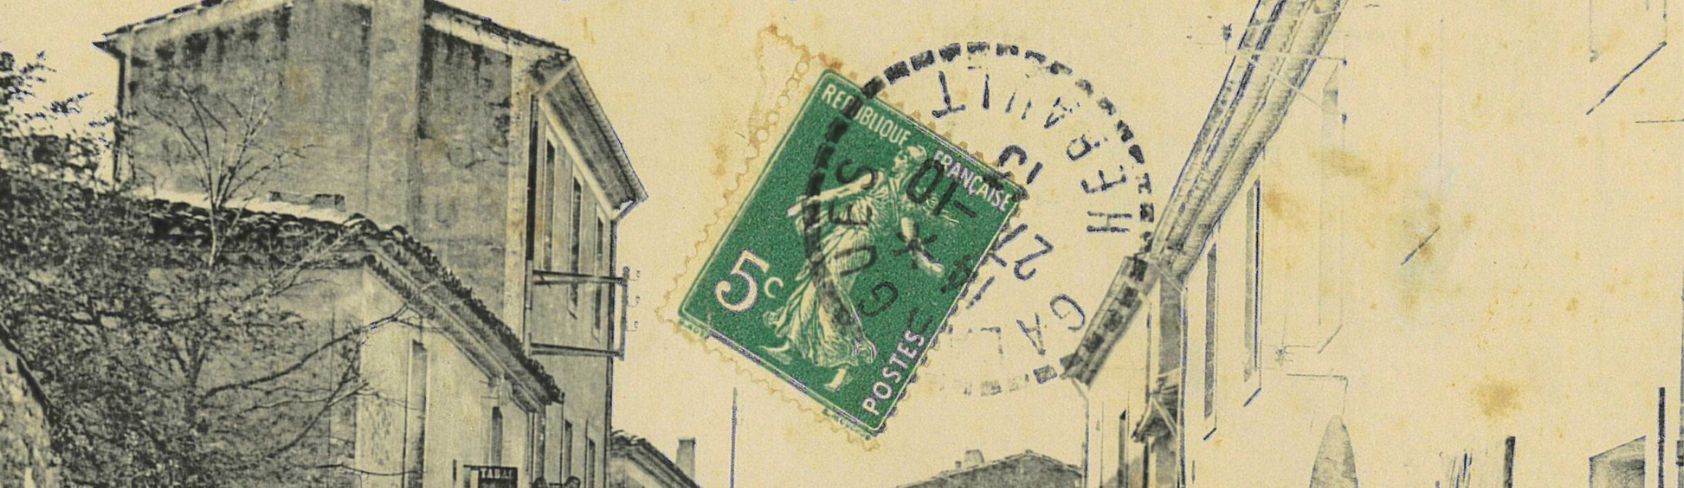 Les cartes postales anciennes : des sources pour la généalogie